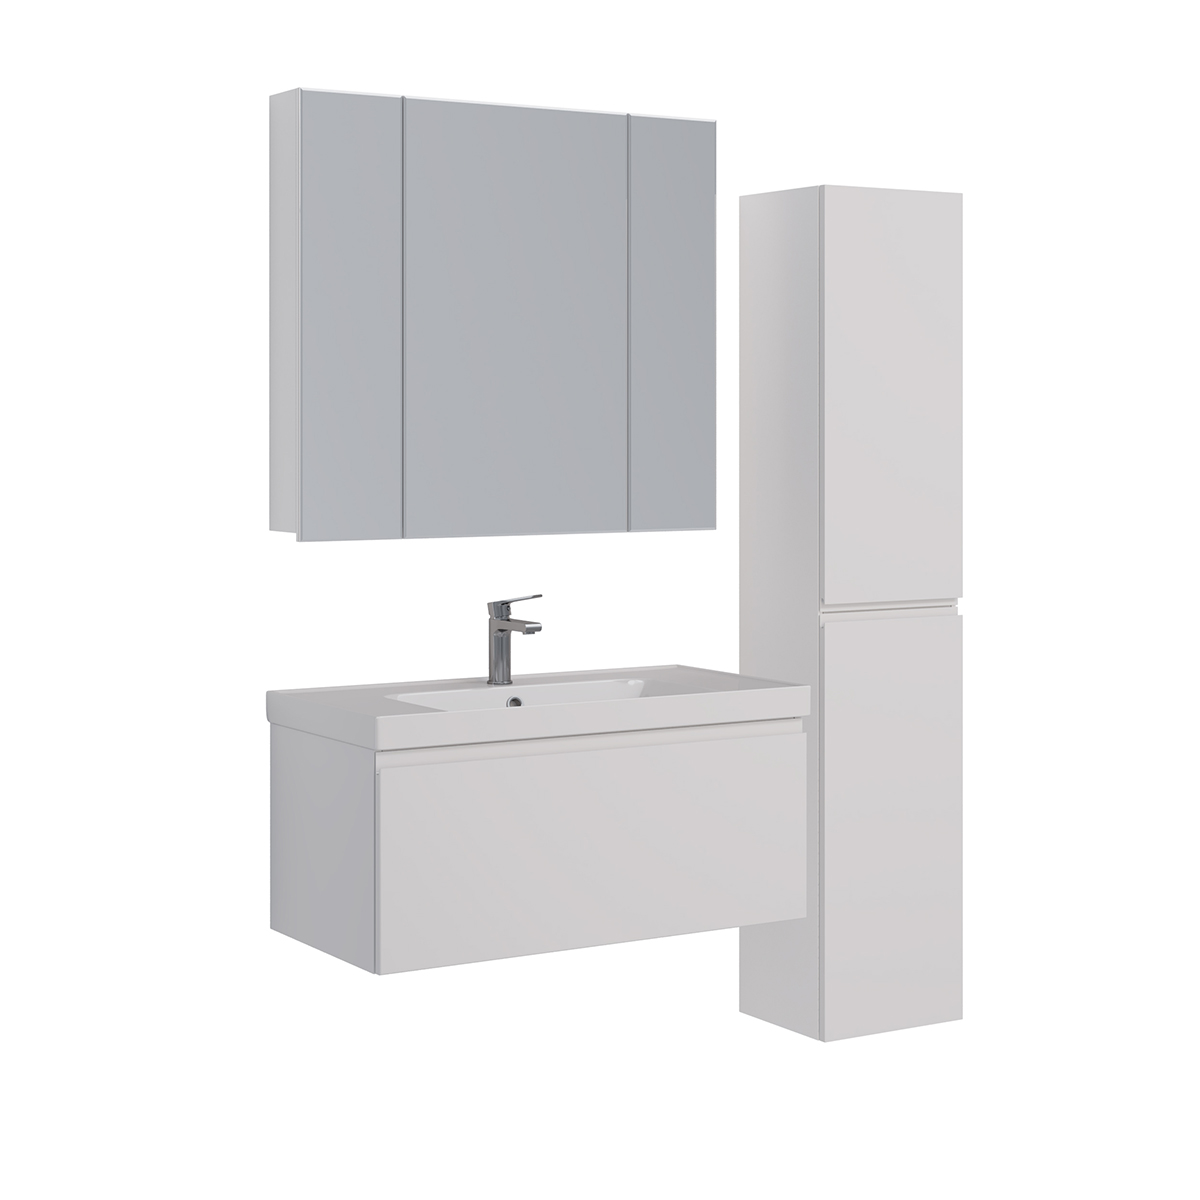 Шкаф зеркальный Lemark UNIVERSAL 100х80 см 3-х дверный, цвет корпуса: Белый глянец